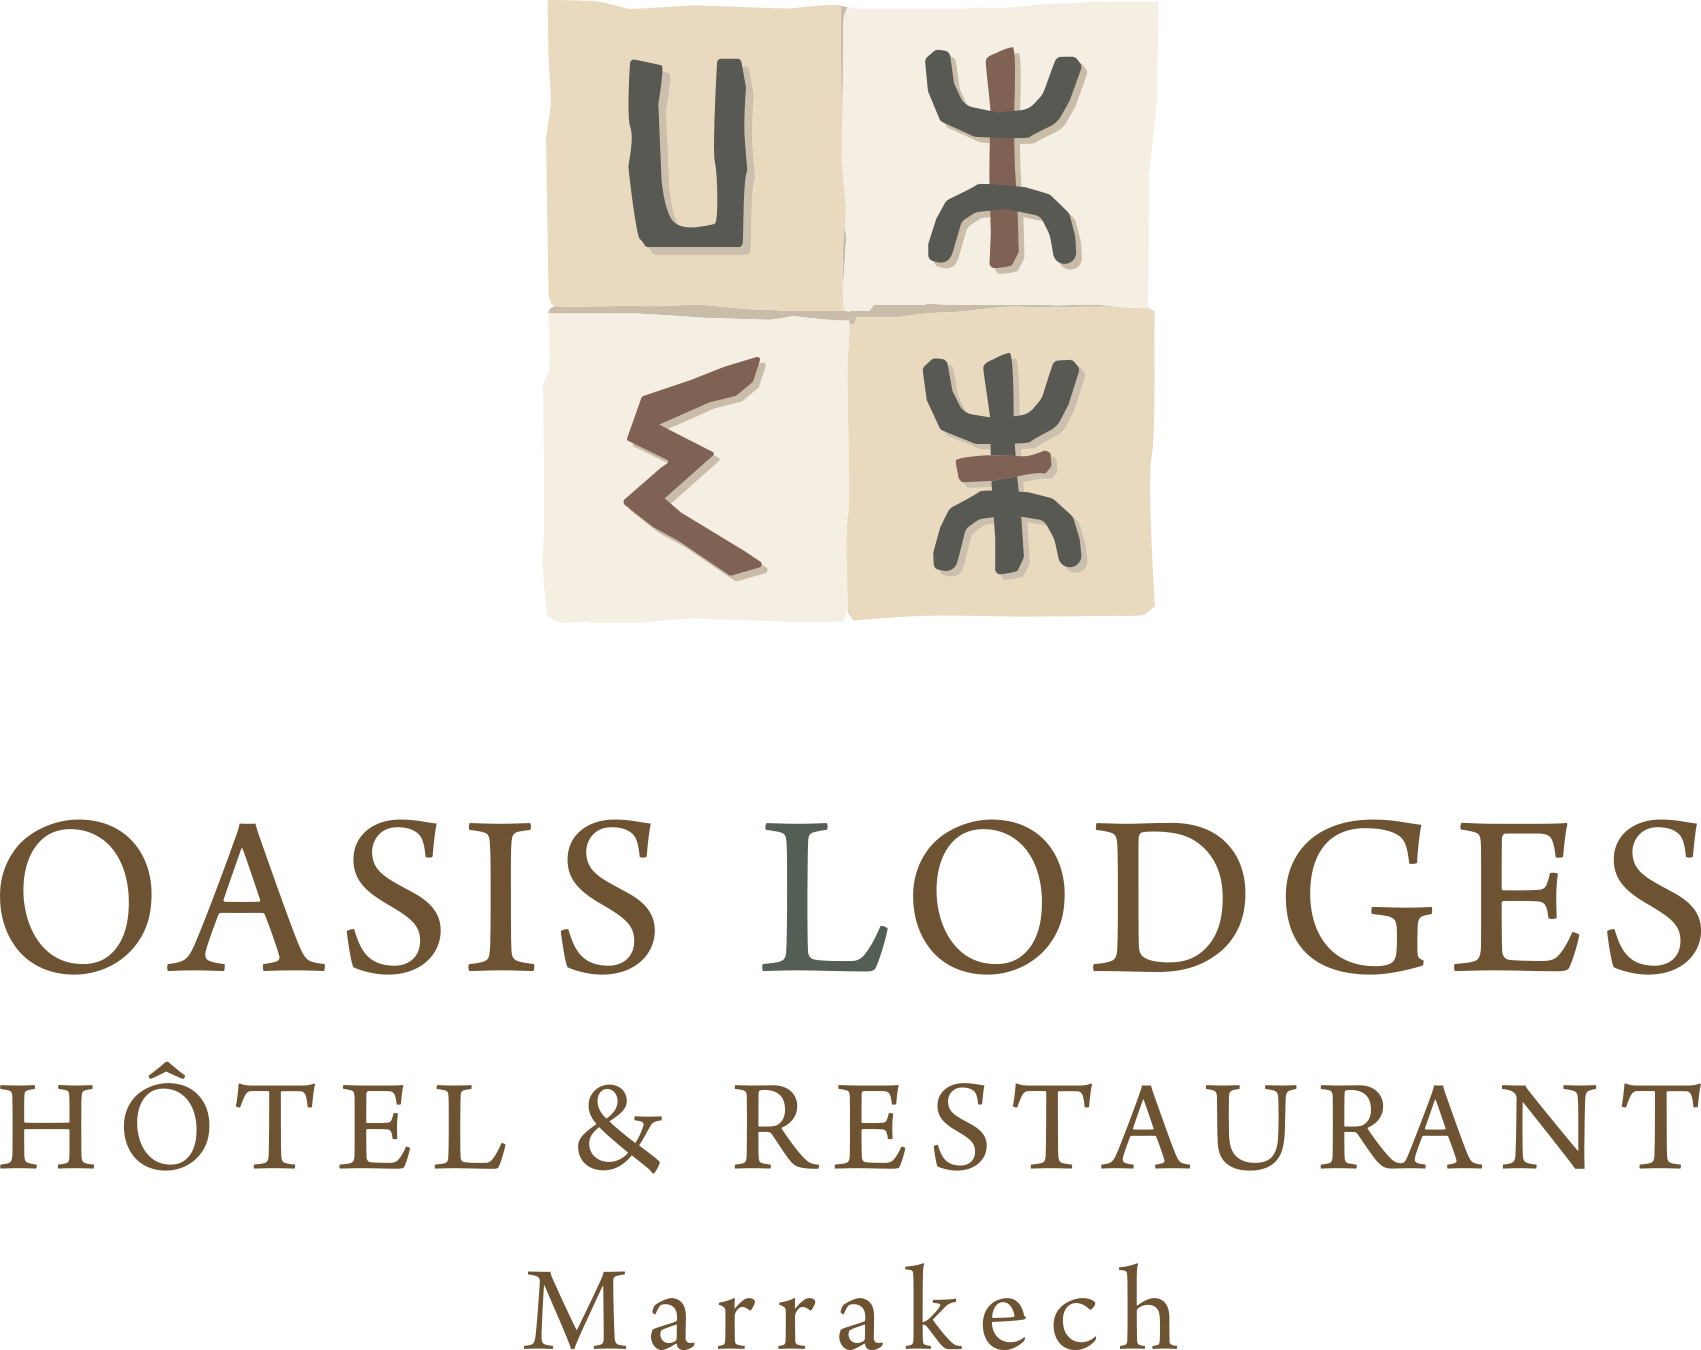 Oasis Lodges Hotel Restaurant Logo